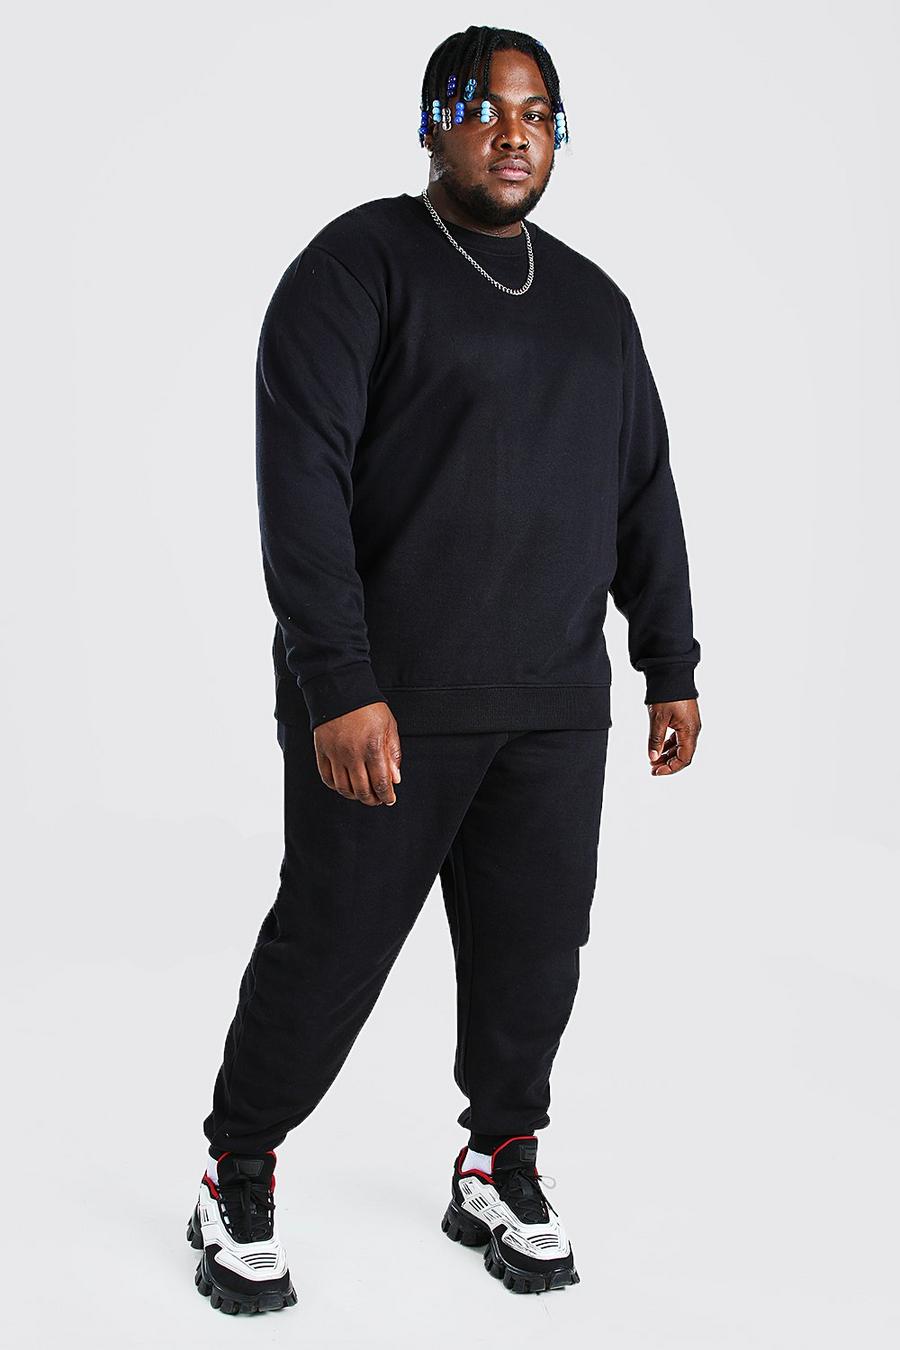 Black schwarz Plus Size Basic Sweater Tracksuit